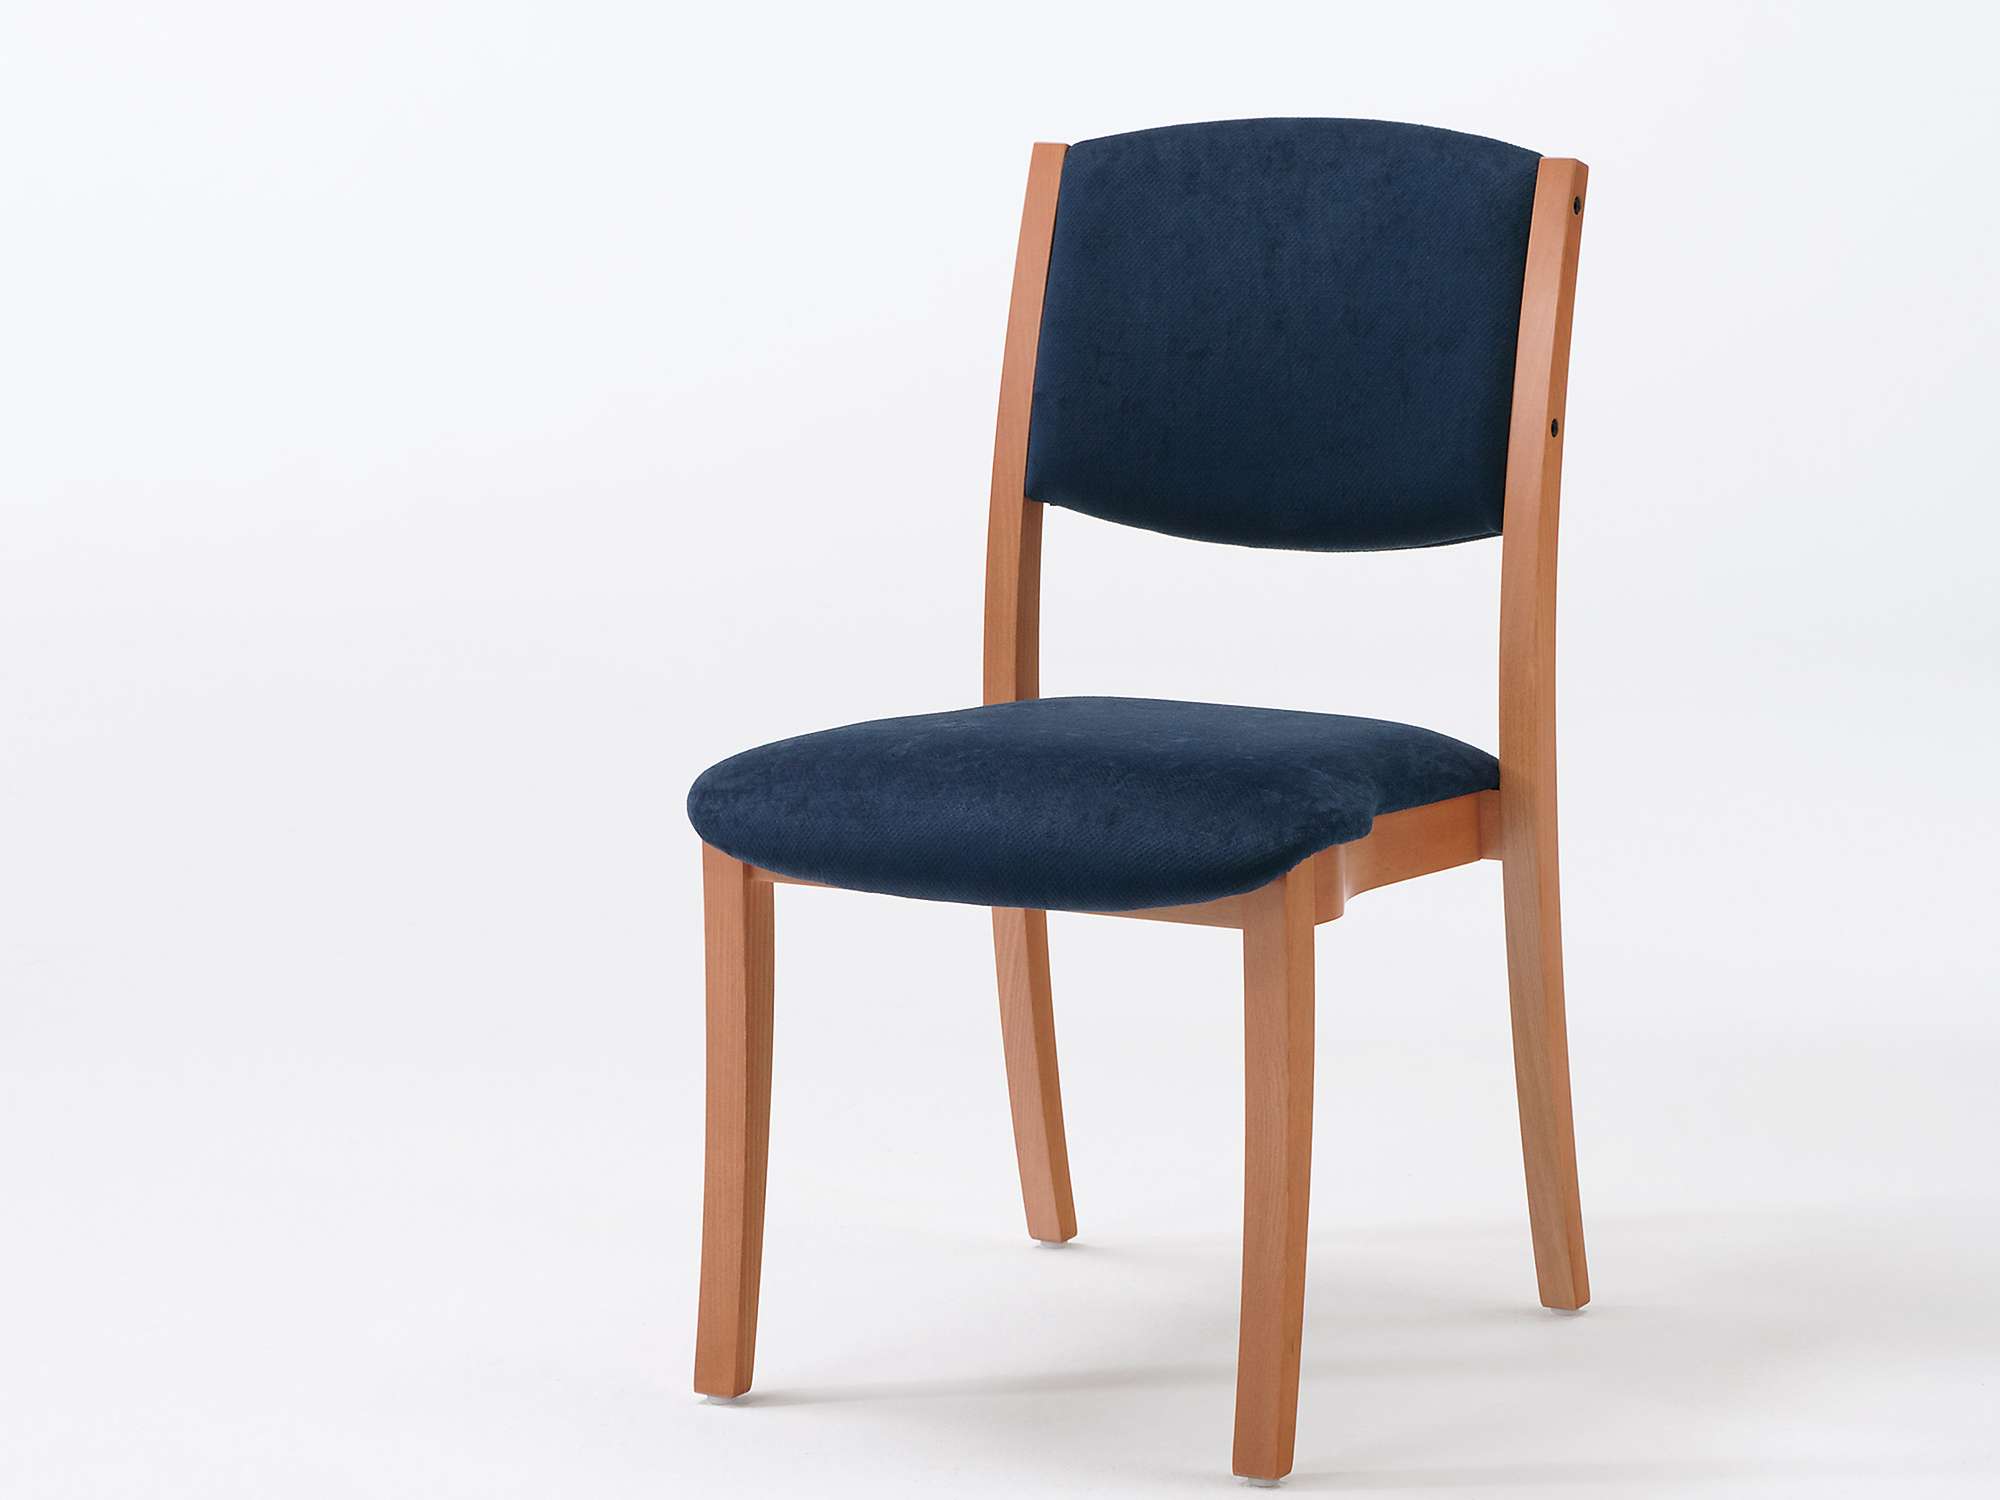 Sedego-tuoli päällekkäin pinottavana mallina